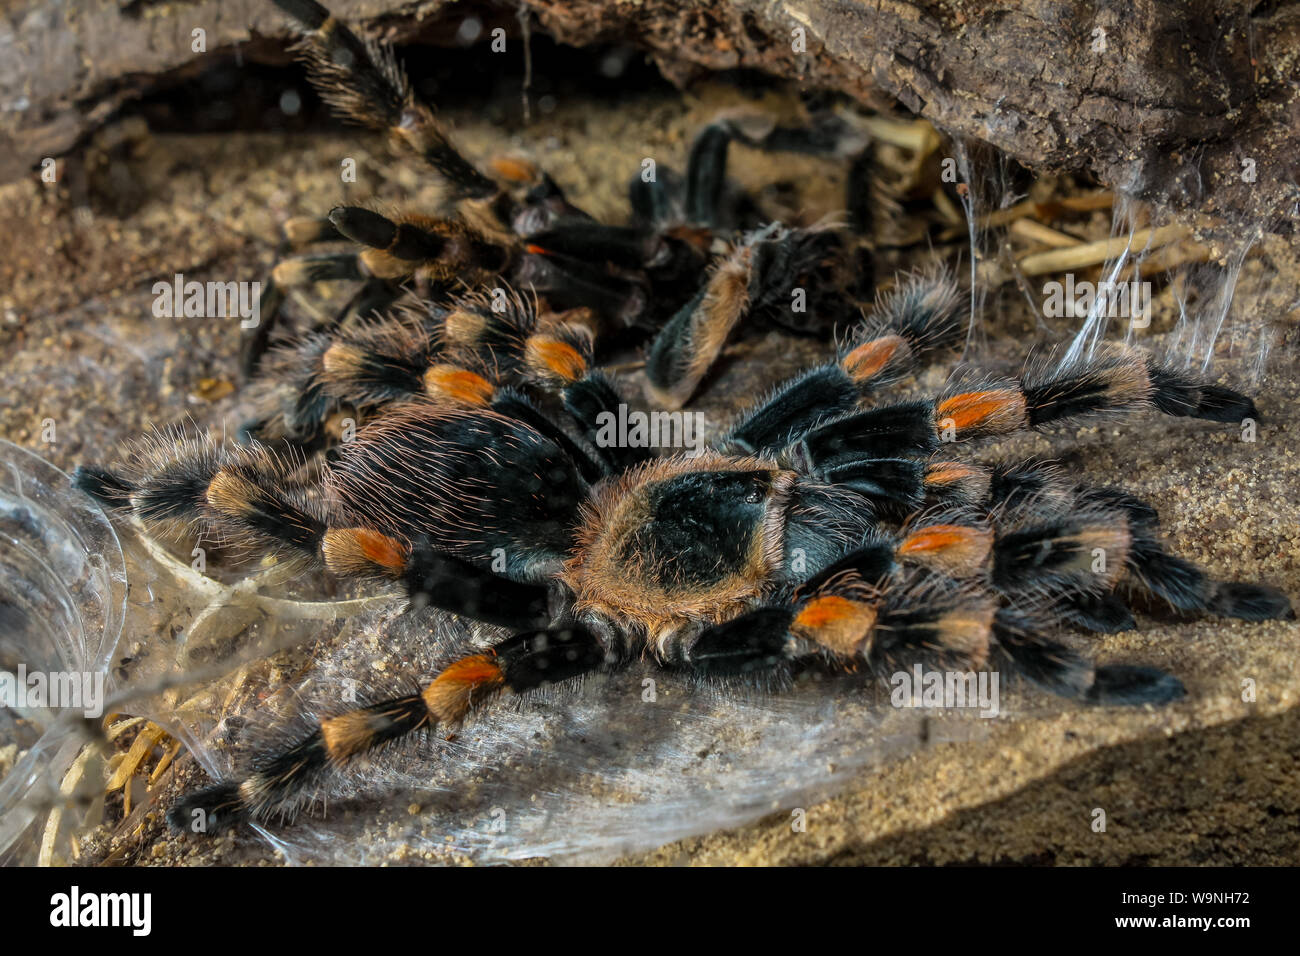 Tarantula (animal exotique) au cours du processus de mue (ecydsis), l'arachnide close-up Banque D'Images